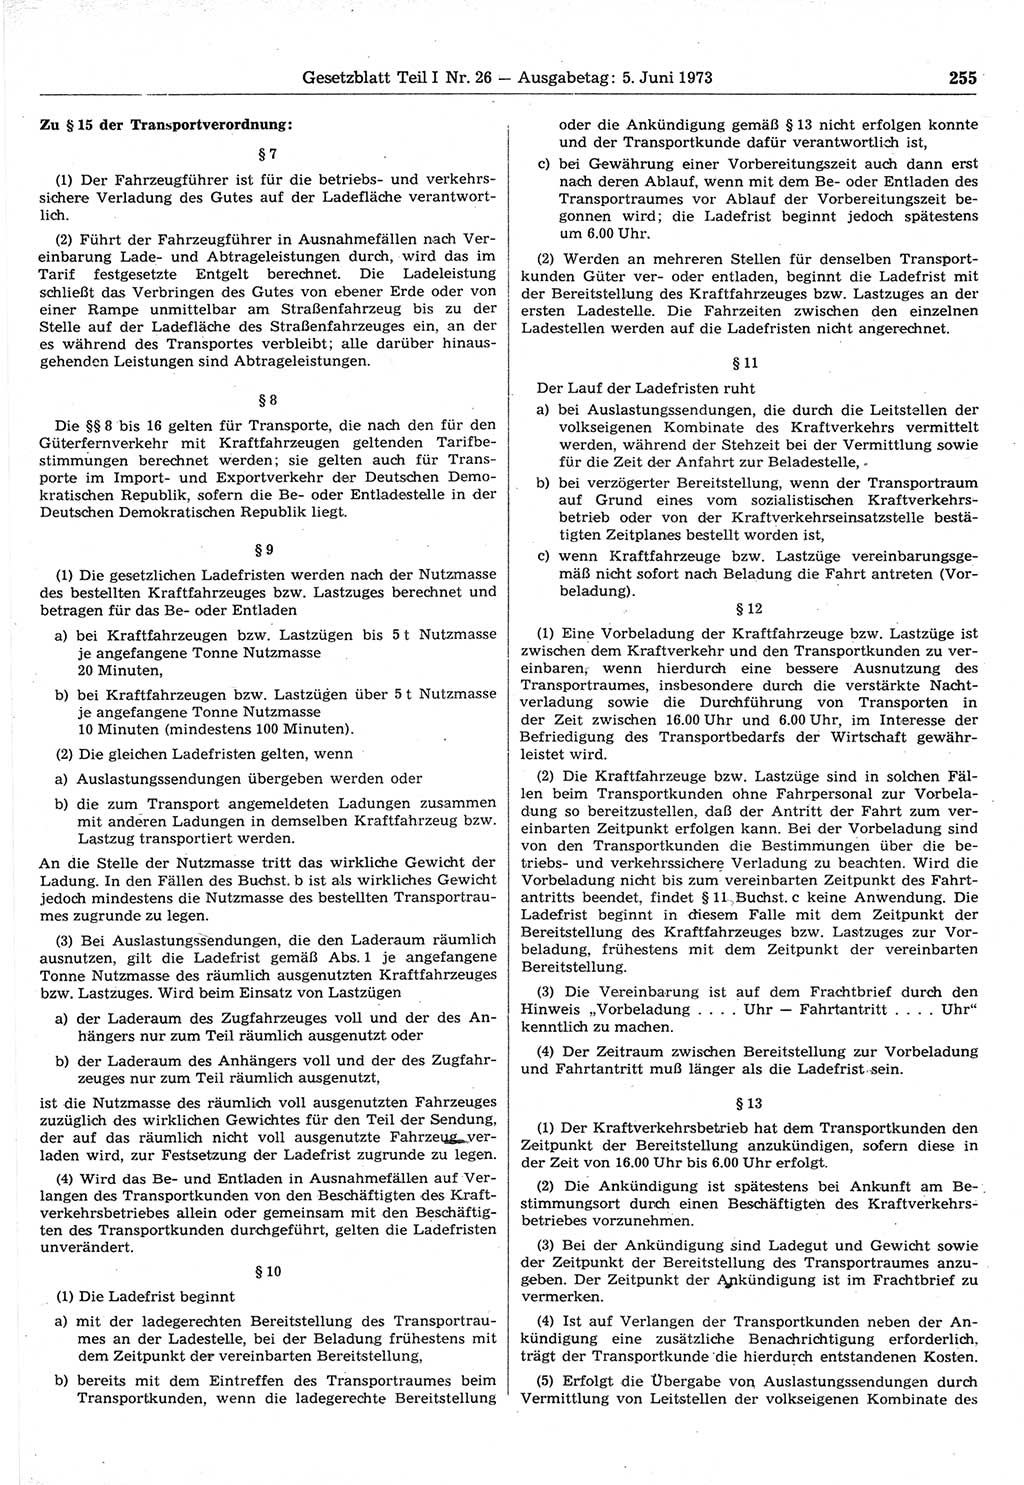 Gesetzblatt (GBl.) der Deutschen Demokratischen Republik (DDR) Teil Ⅰ 1973, Seite 255 (GBl. DDR Ⅰ 1973, S. 255)